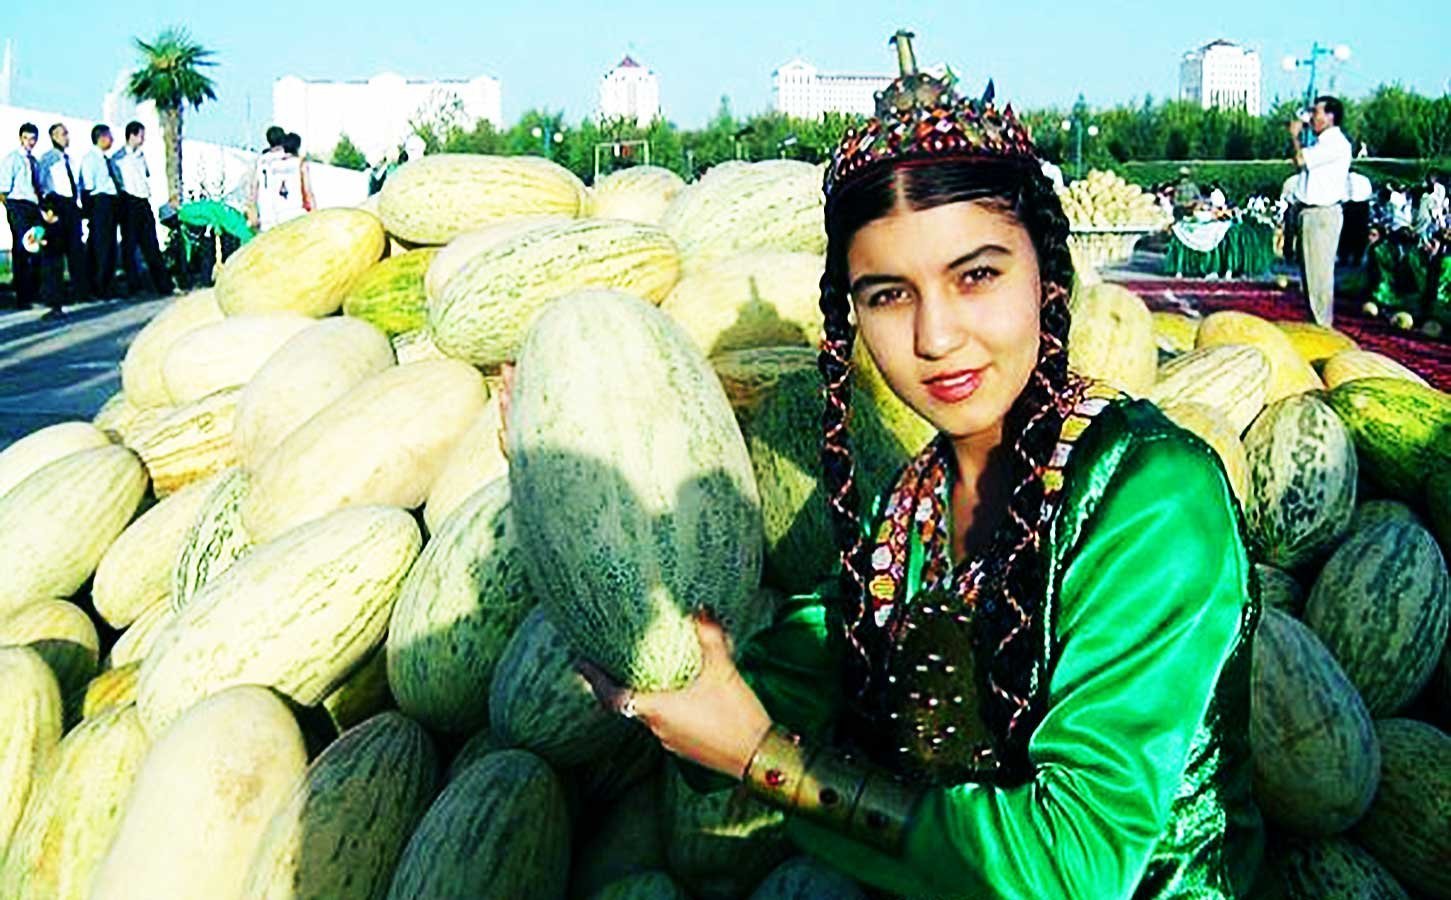 Дыни девушек. Туркменистан,дыни, бахчи. Сорт дыни вахарман туркменский. Праздник дыни Ашхабад. Туркменистан Туркмен туркменка.